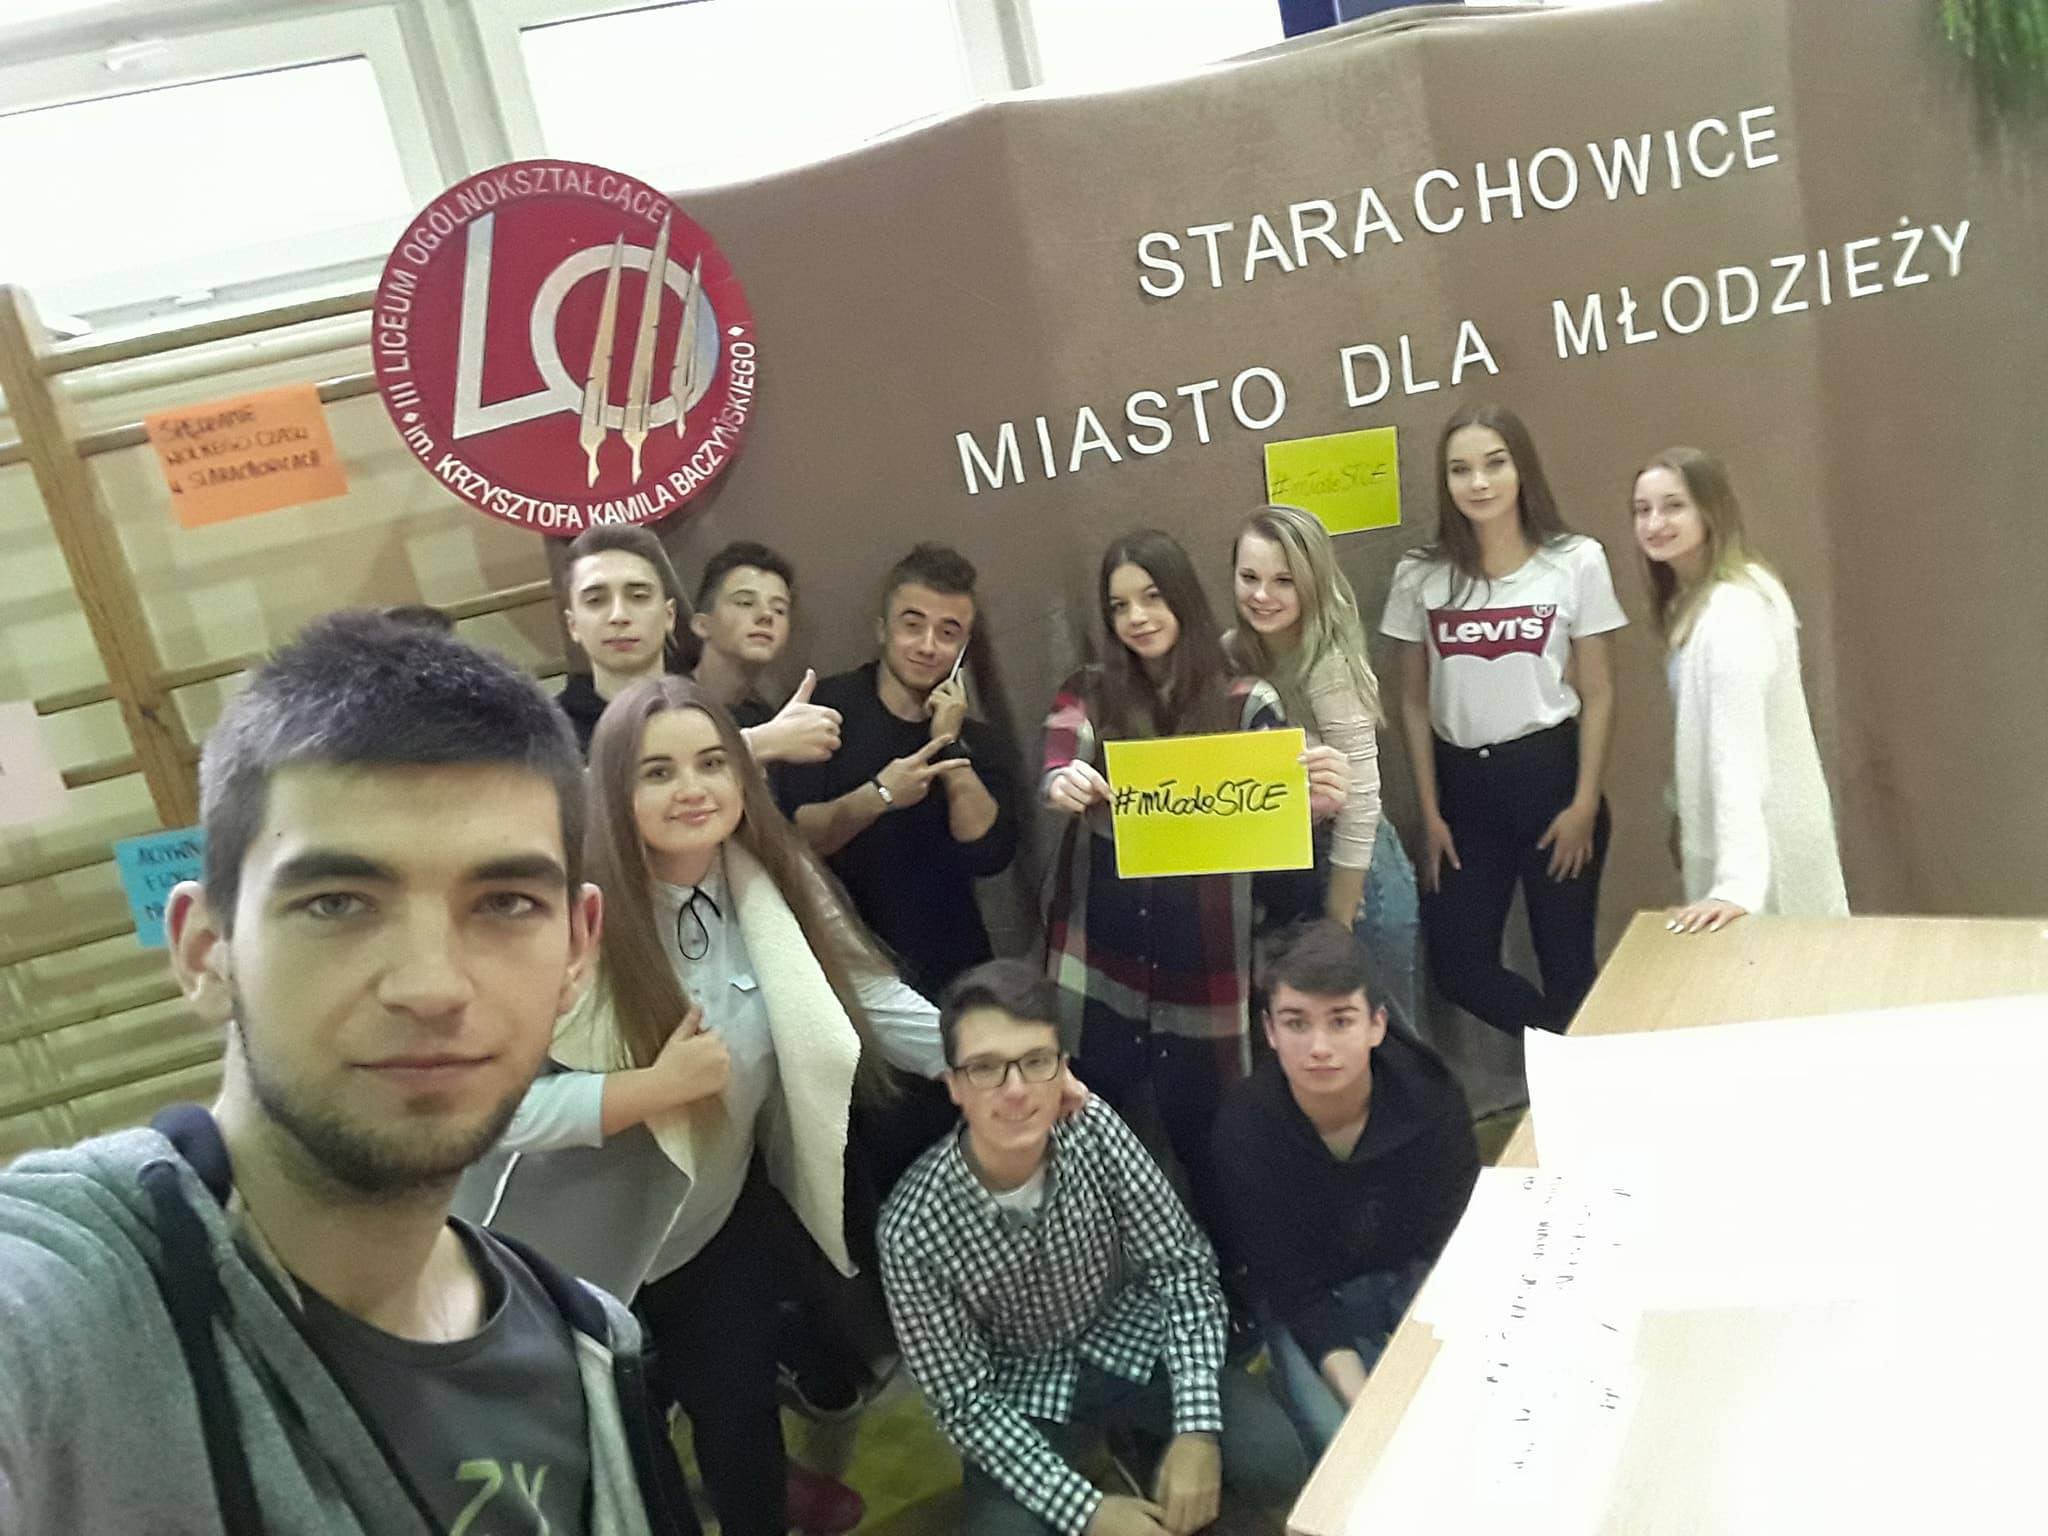 Radni podczas pierwszego spotkania w ramach projektu "Starachowice - Miasto dla młodzieży" images